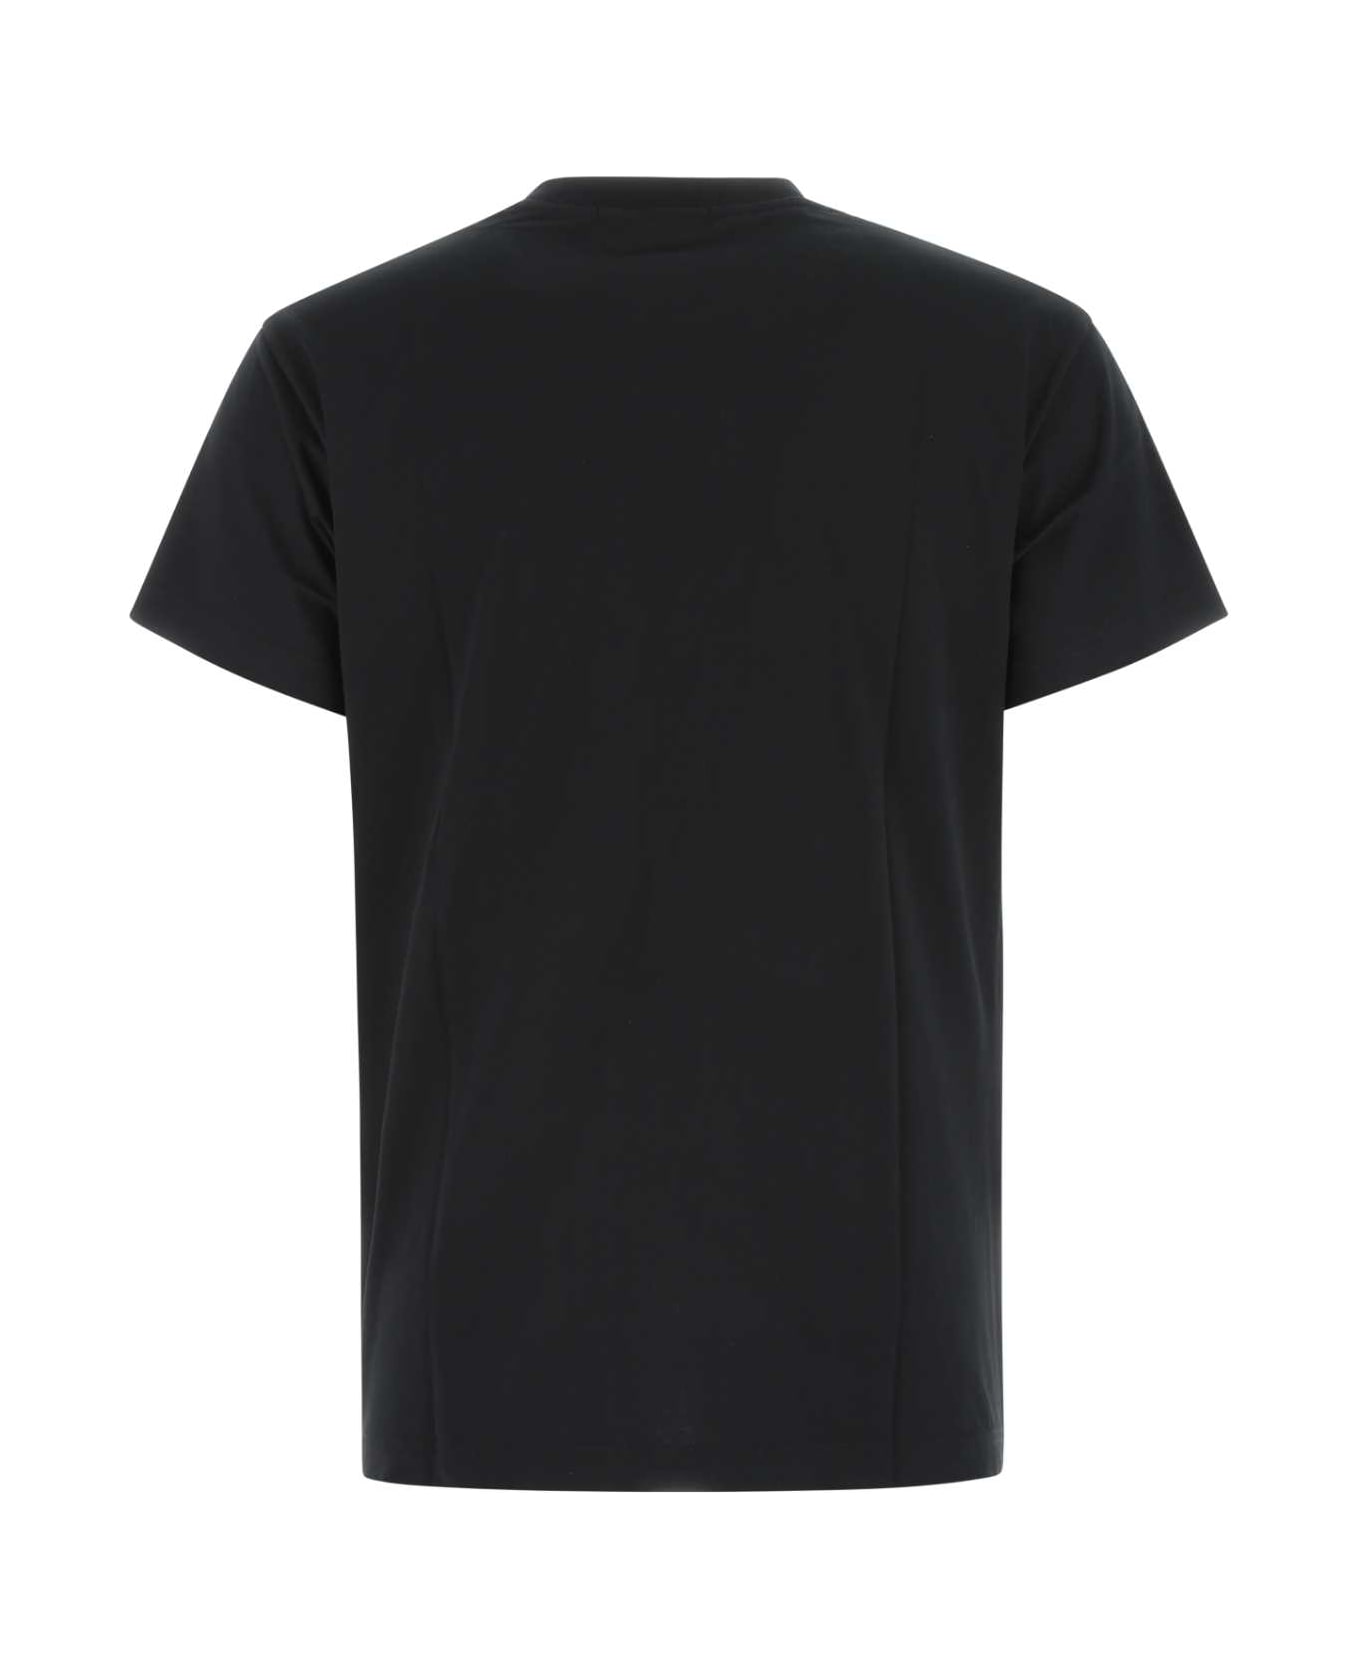 AMBUSH Black Cotton T-shirt Set - 1002